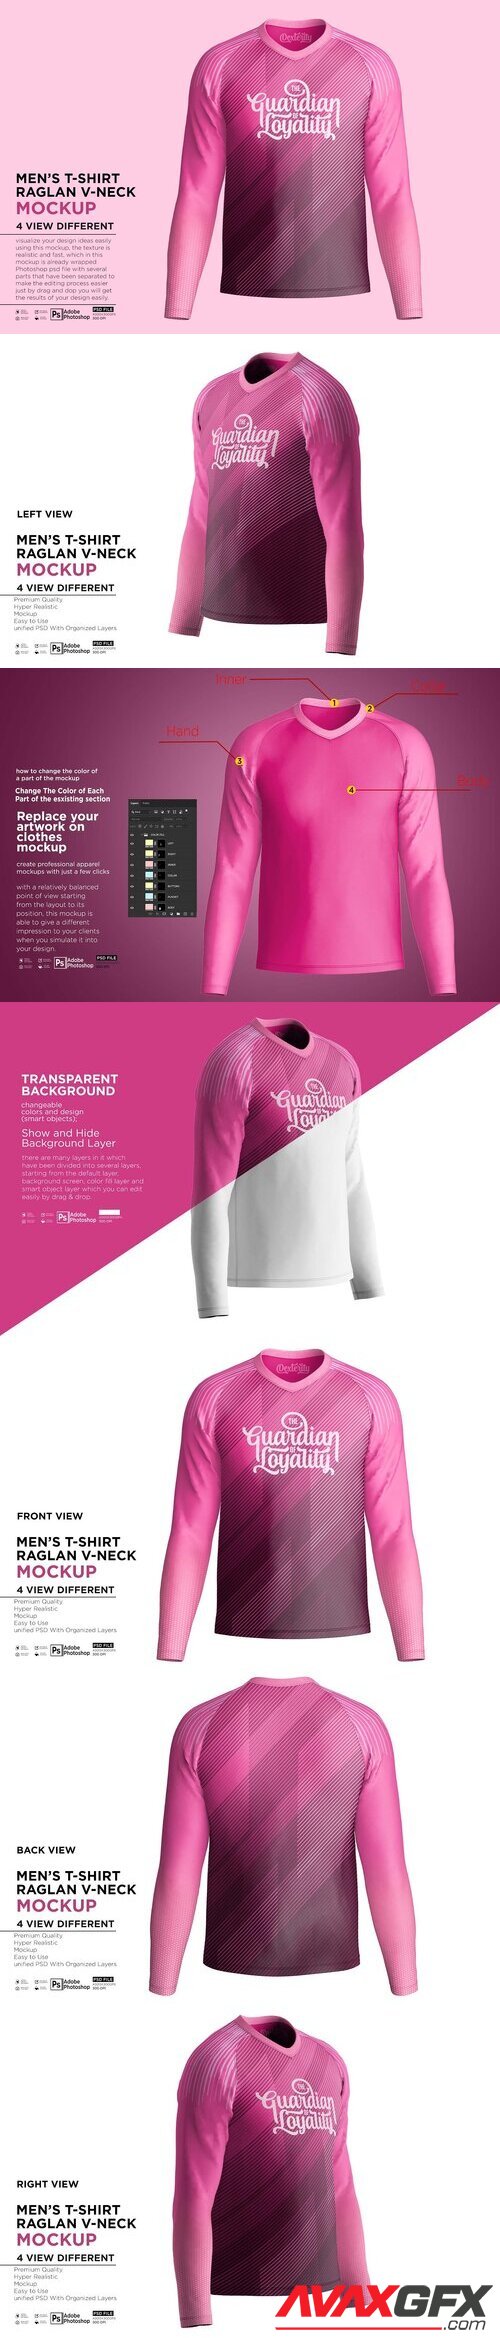 CreativeMarket - Men's T-Shirt Raglan V-Neck Mockup 10848788